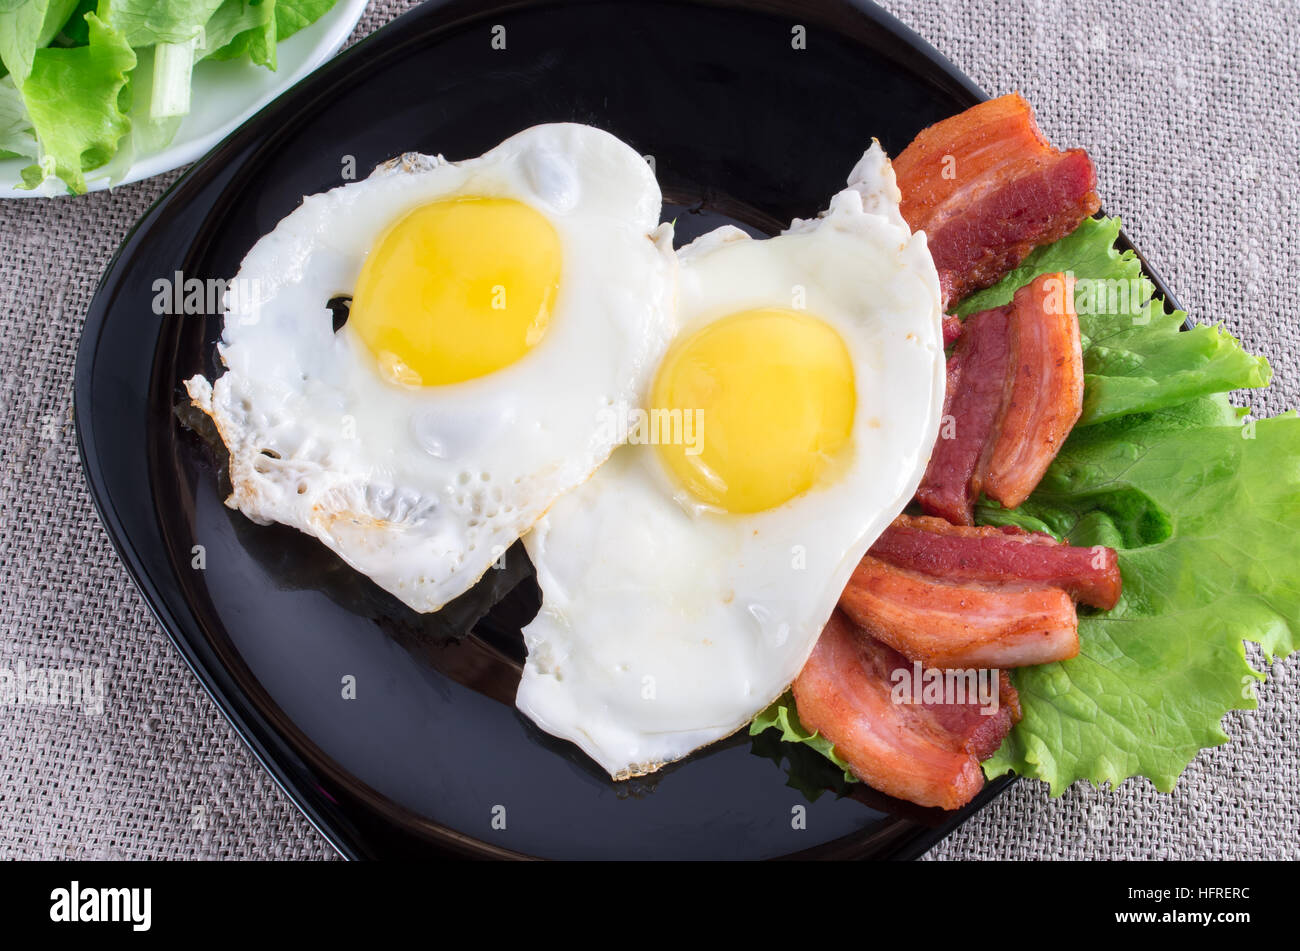 Vista superior de la placa negra con huevos fritos, tocino y lechuga de cerca en un mantel gris Foto de stock